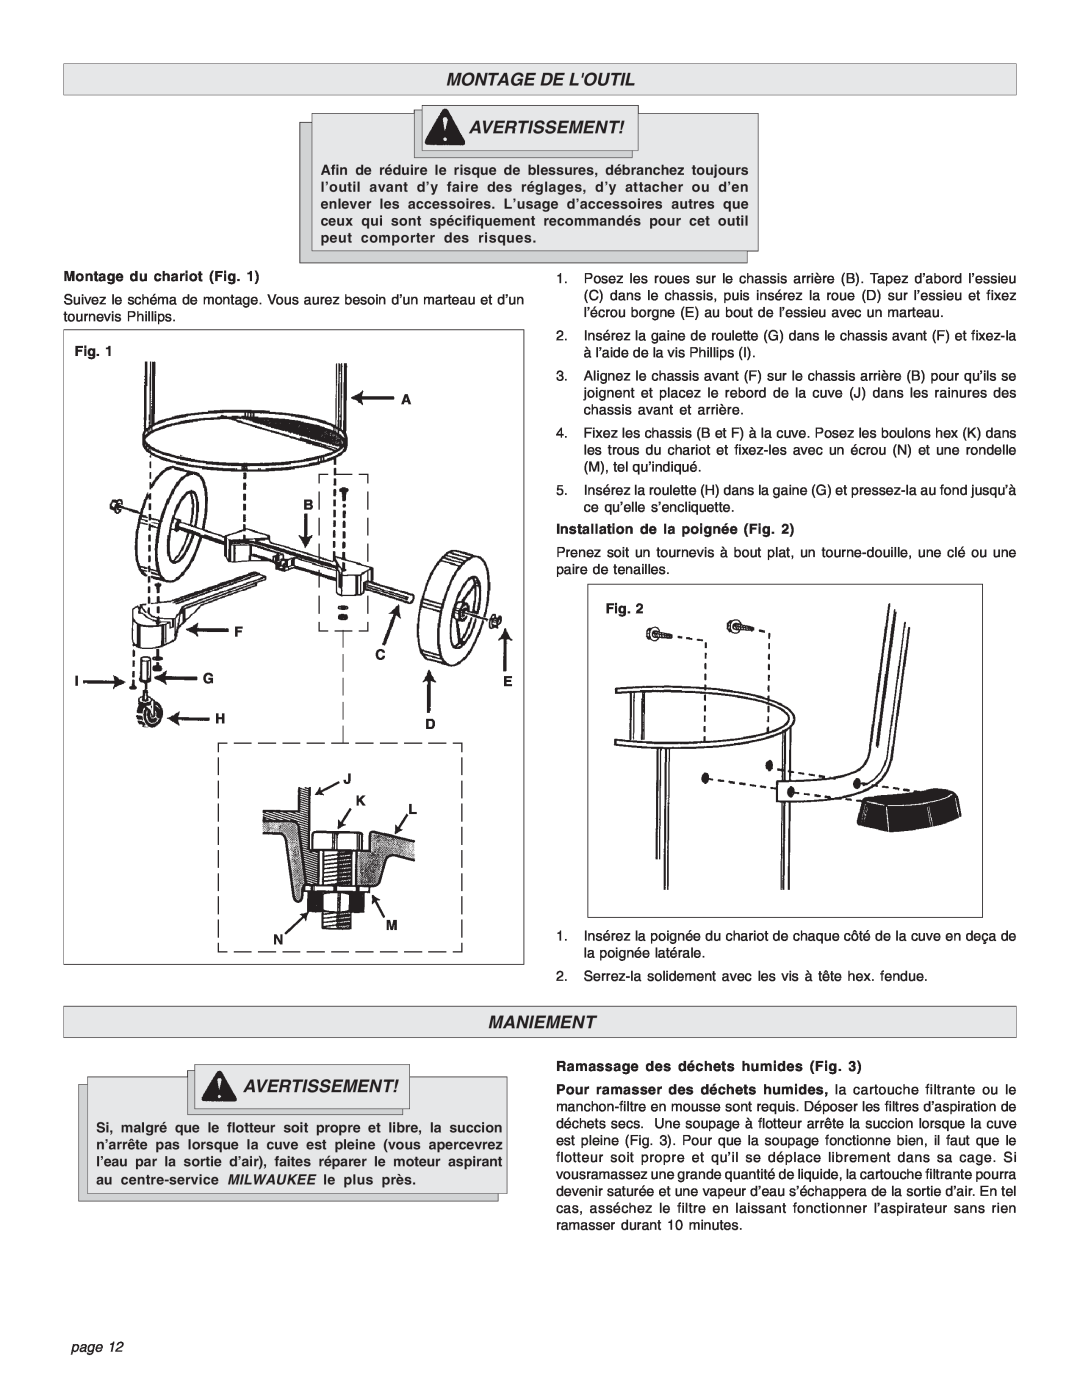 Intec 8940-20 manual Montage De Loutil Avertissement, Maniement, page 